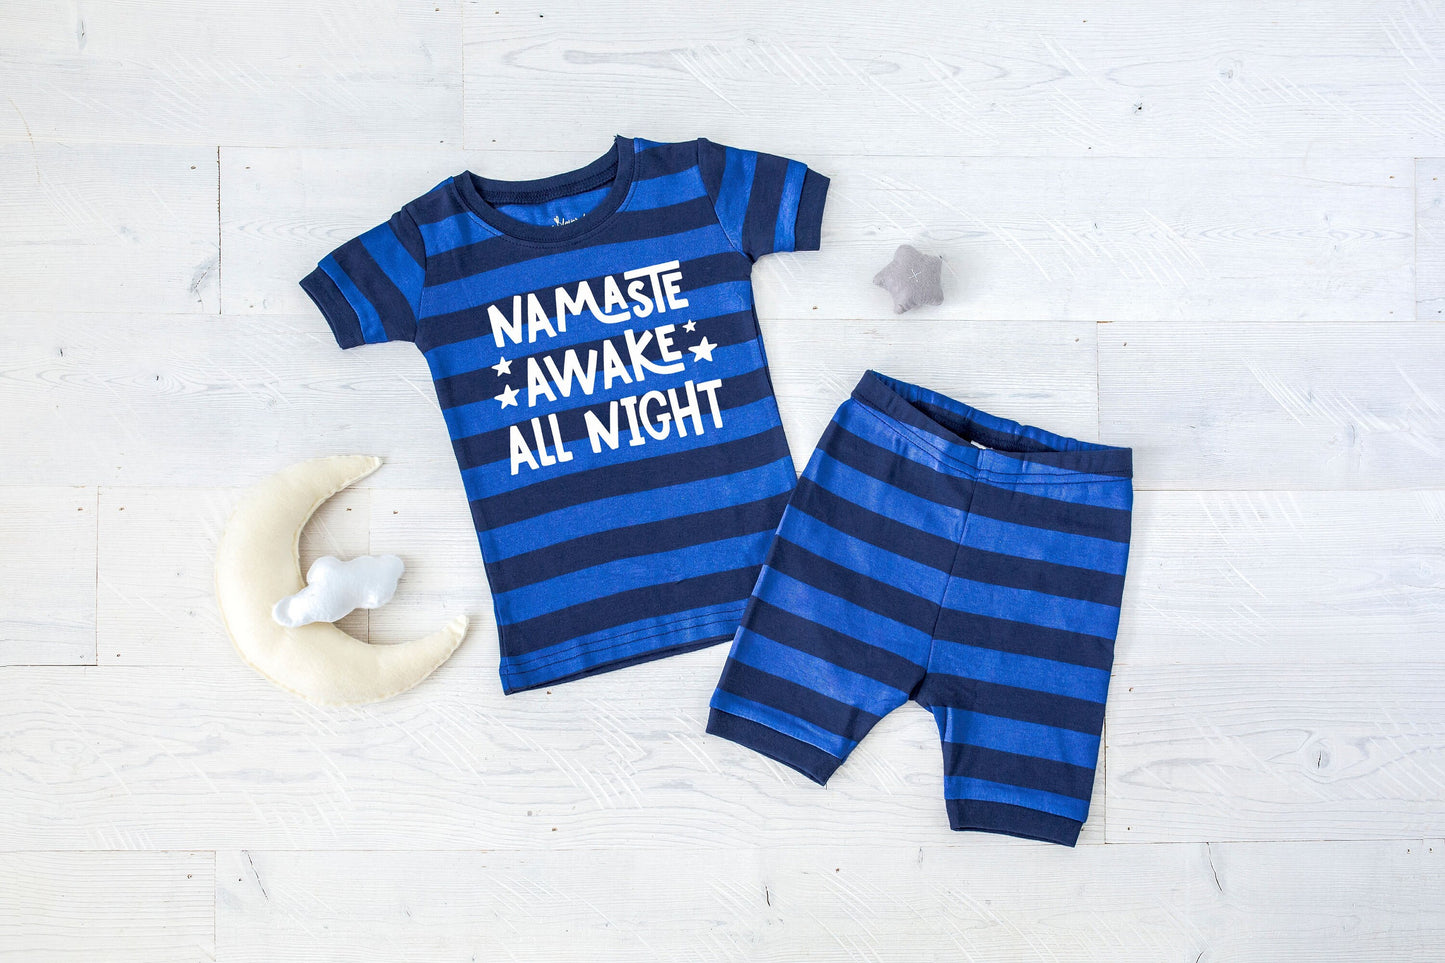 Namaste Awake All Night Blue Striped Shorts Toddler Pajamas - Boys Pajamas - Sleepover Pajamas - Toddler Boy Summer Pajamas - Funny Boys PJs